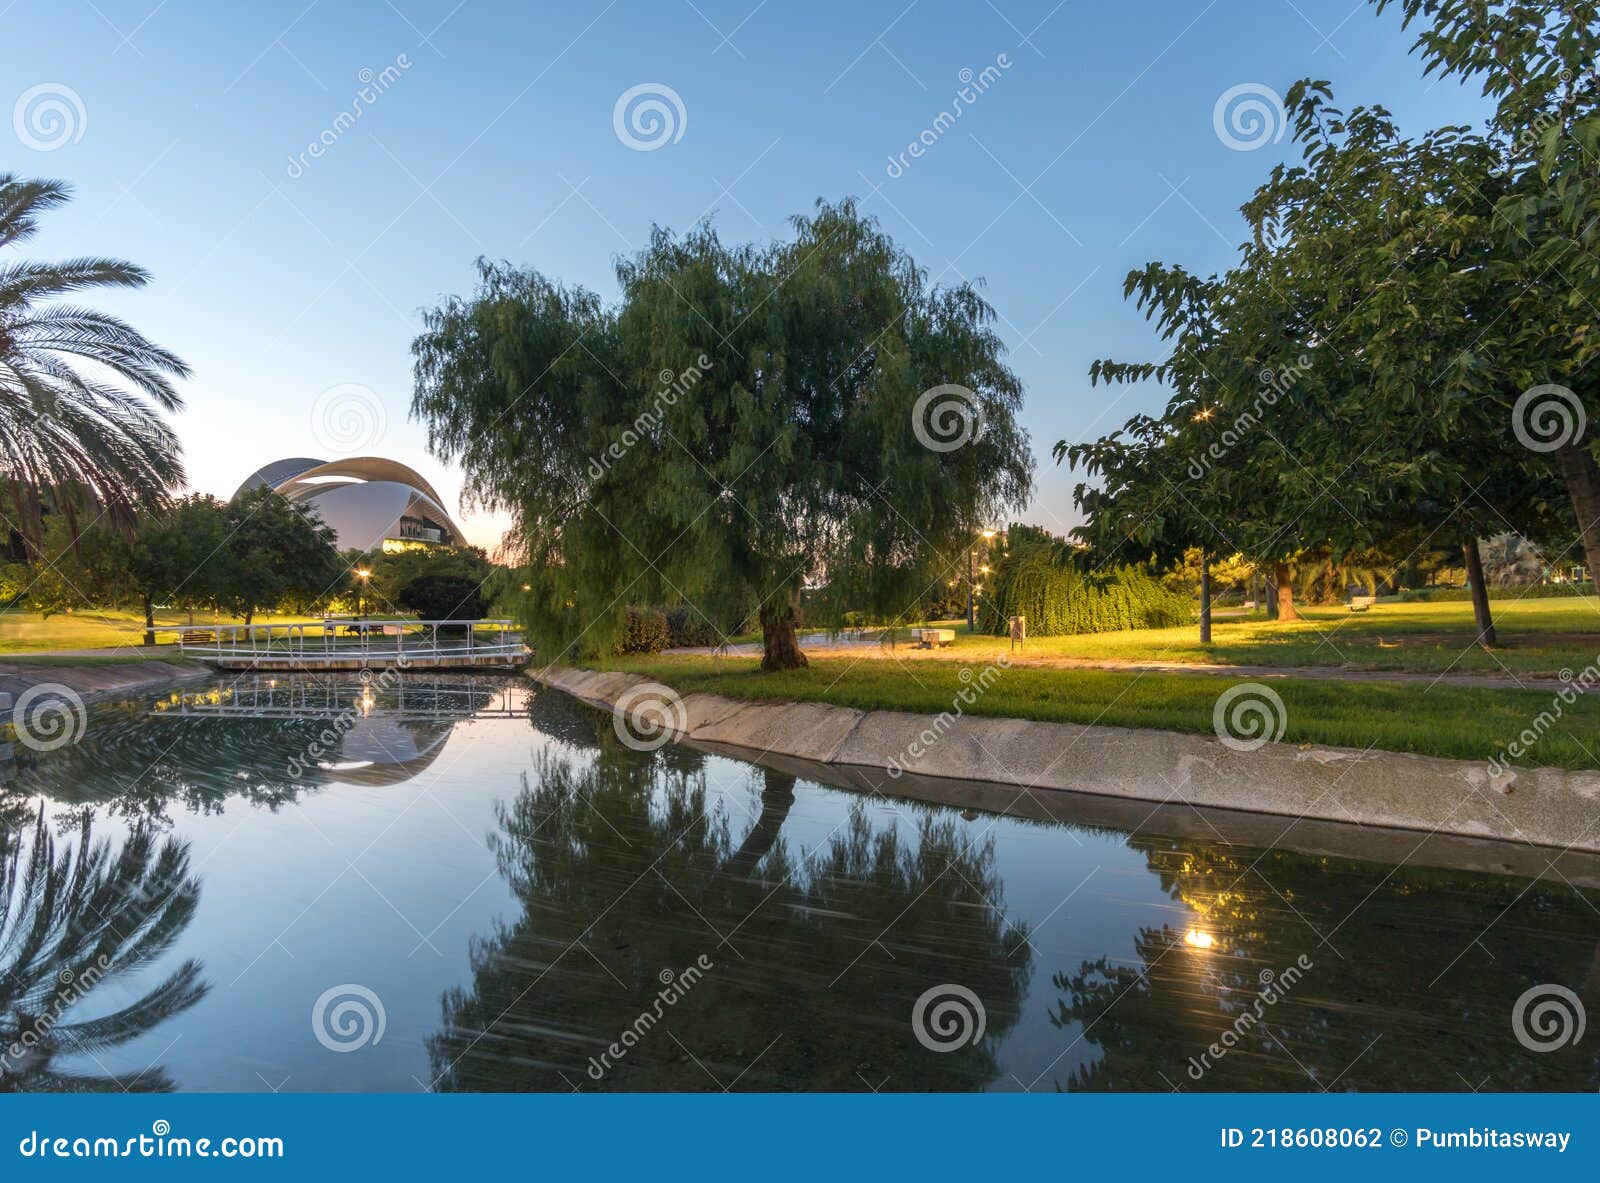 landscape of turia river gardens jardin del , leisure and sport area in valencia